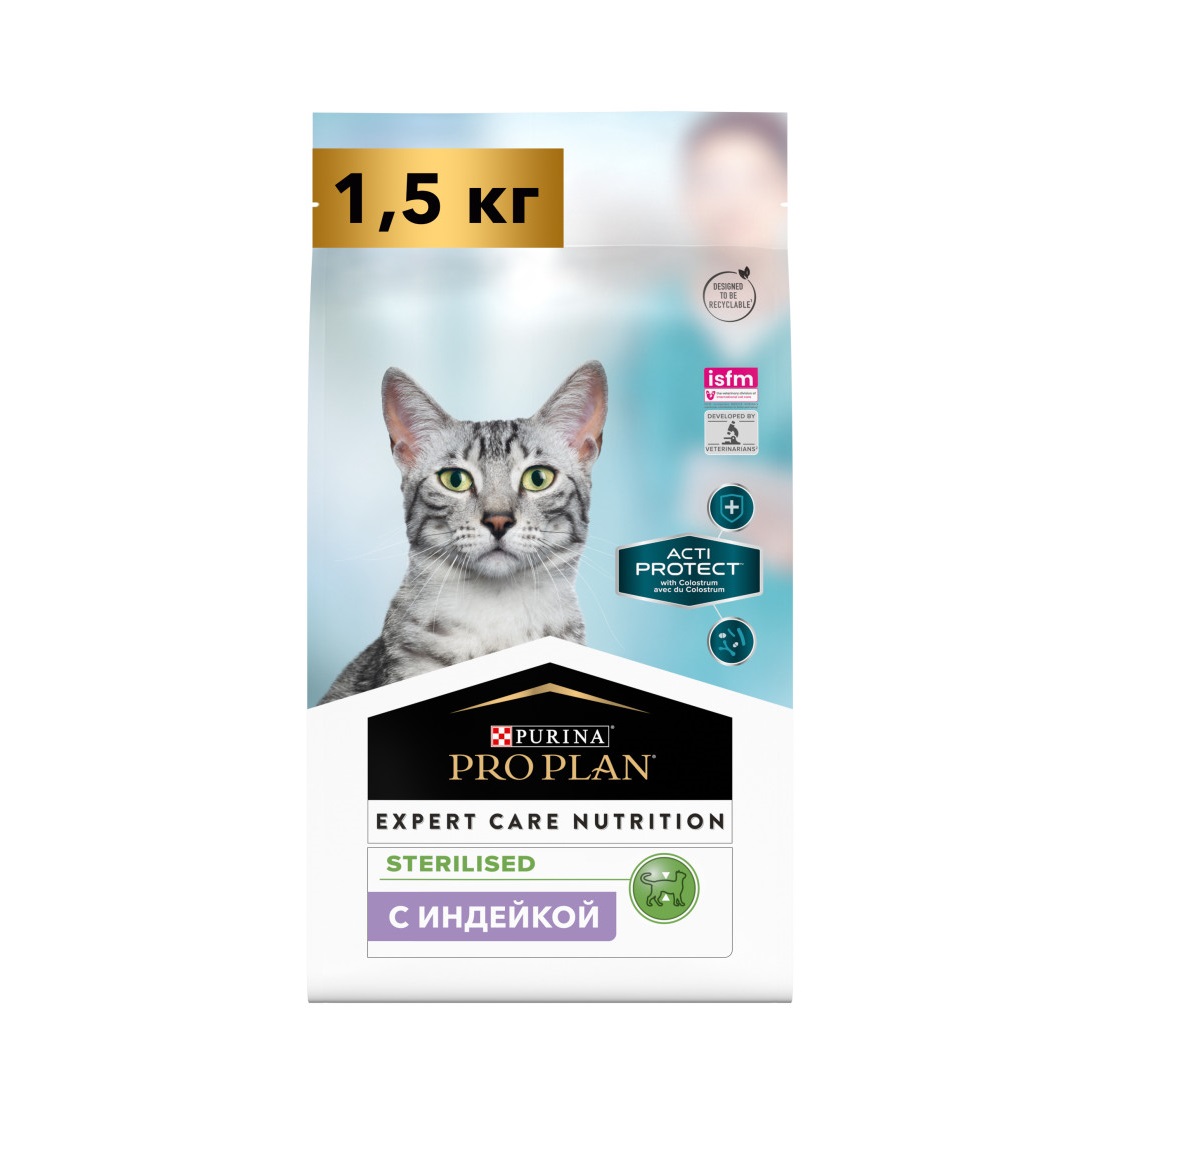 ПроПлан АктиПротект для кошек стерилизованных, Индейка. 1,5кг (Pro Plan Acti Protect)